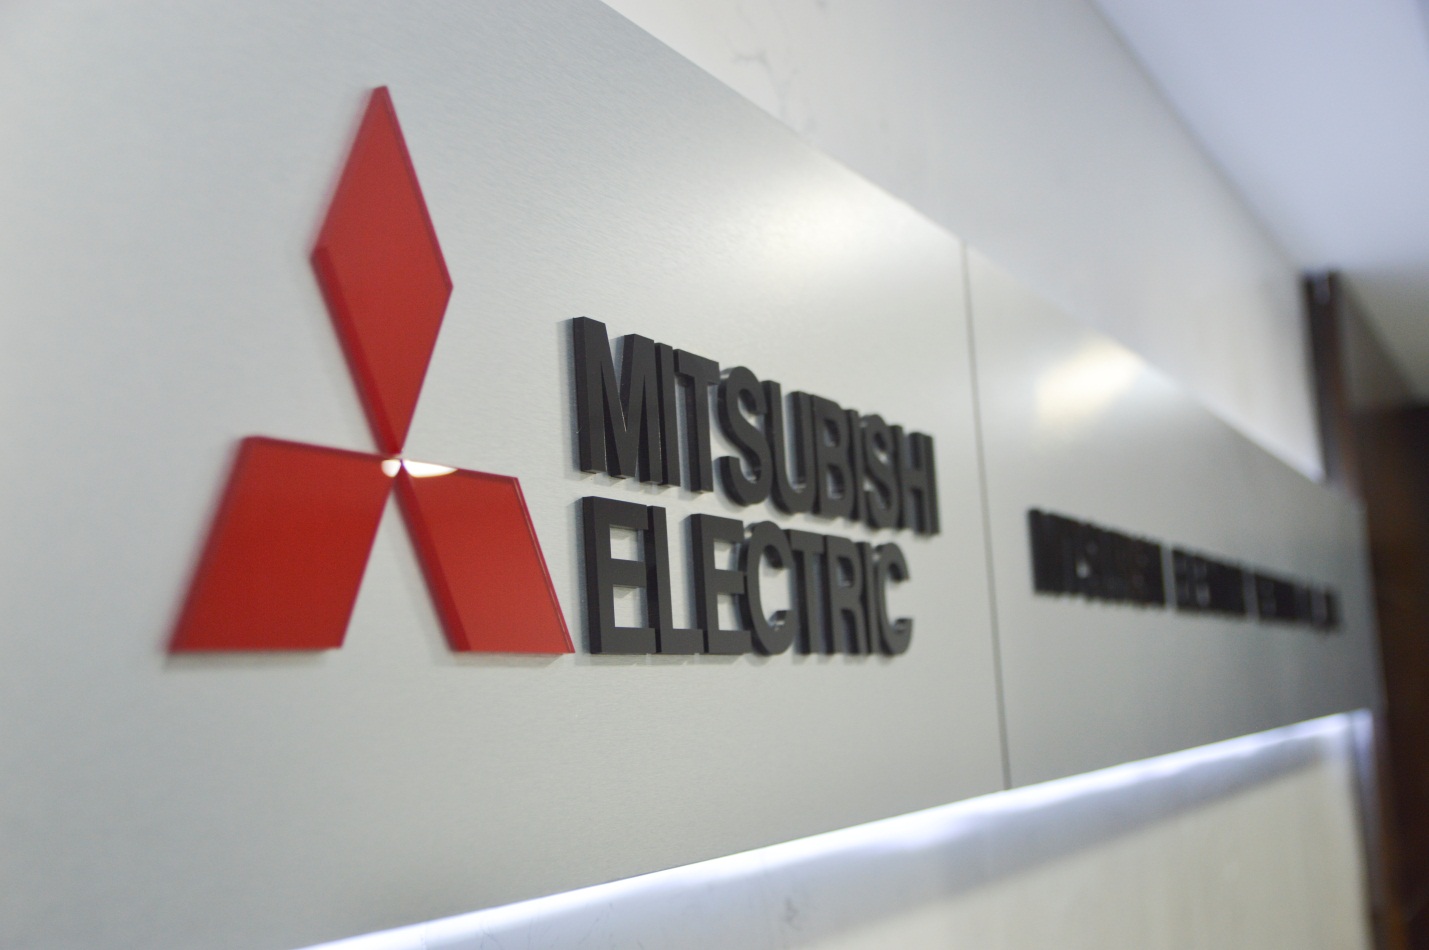 Thiết kế nội thất văn phòng và cung cấp sản phẩm nội thất Công Ty Mitsubishi